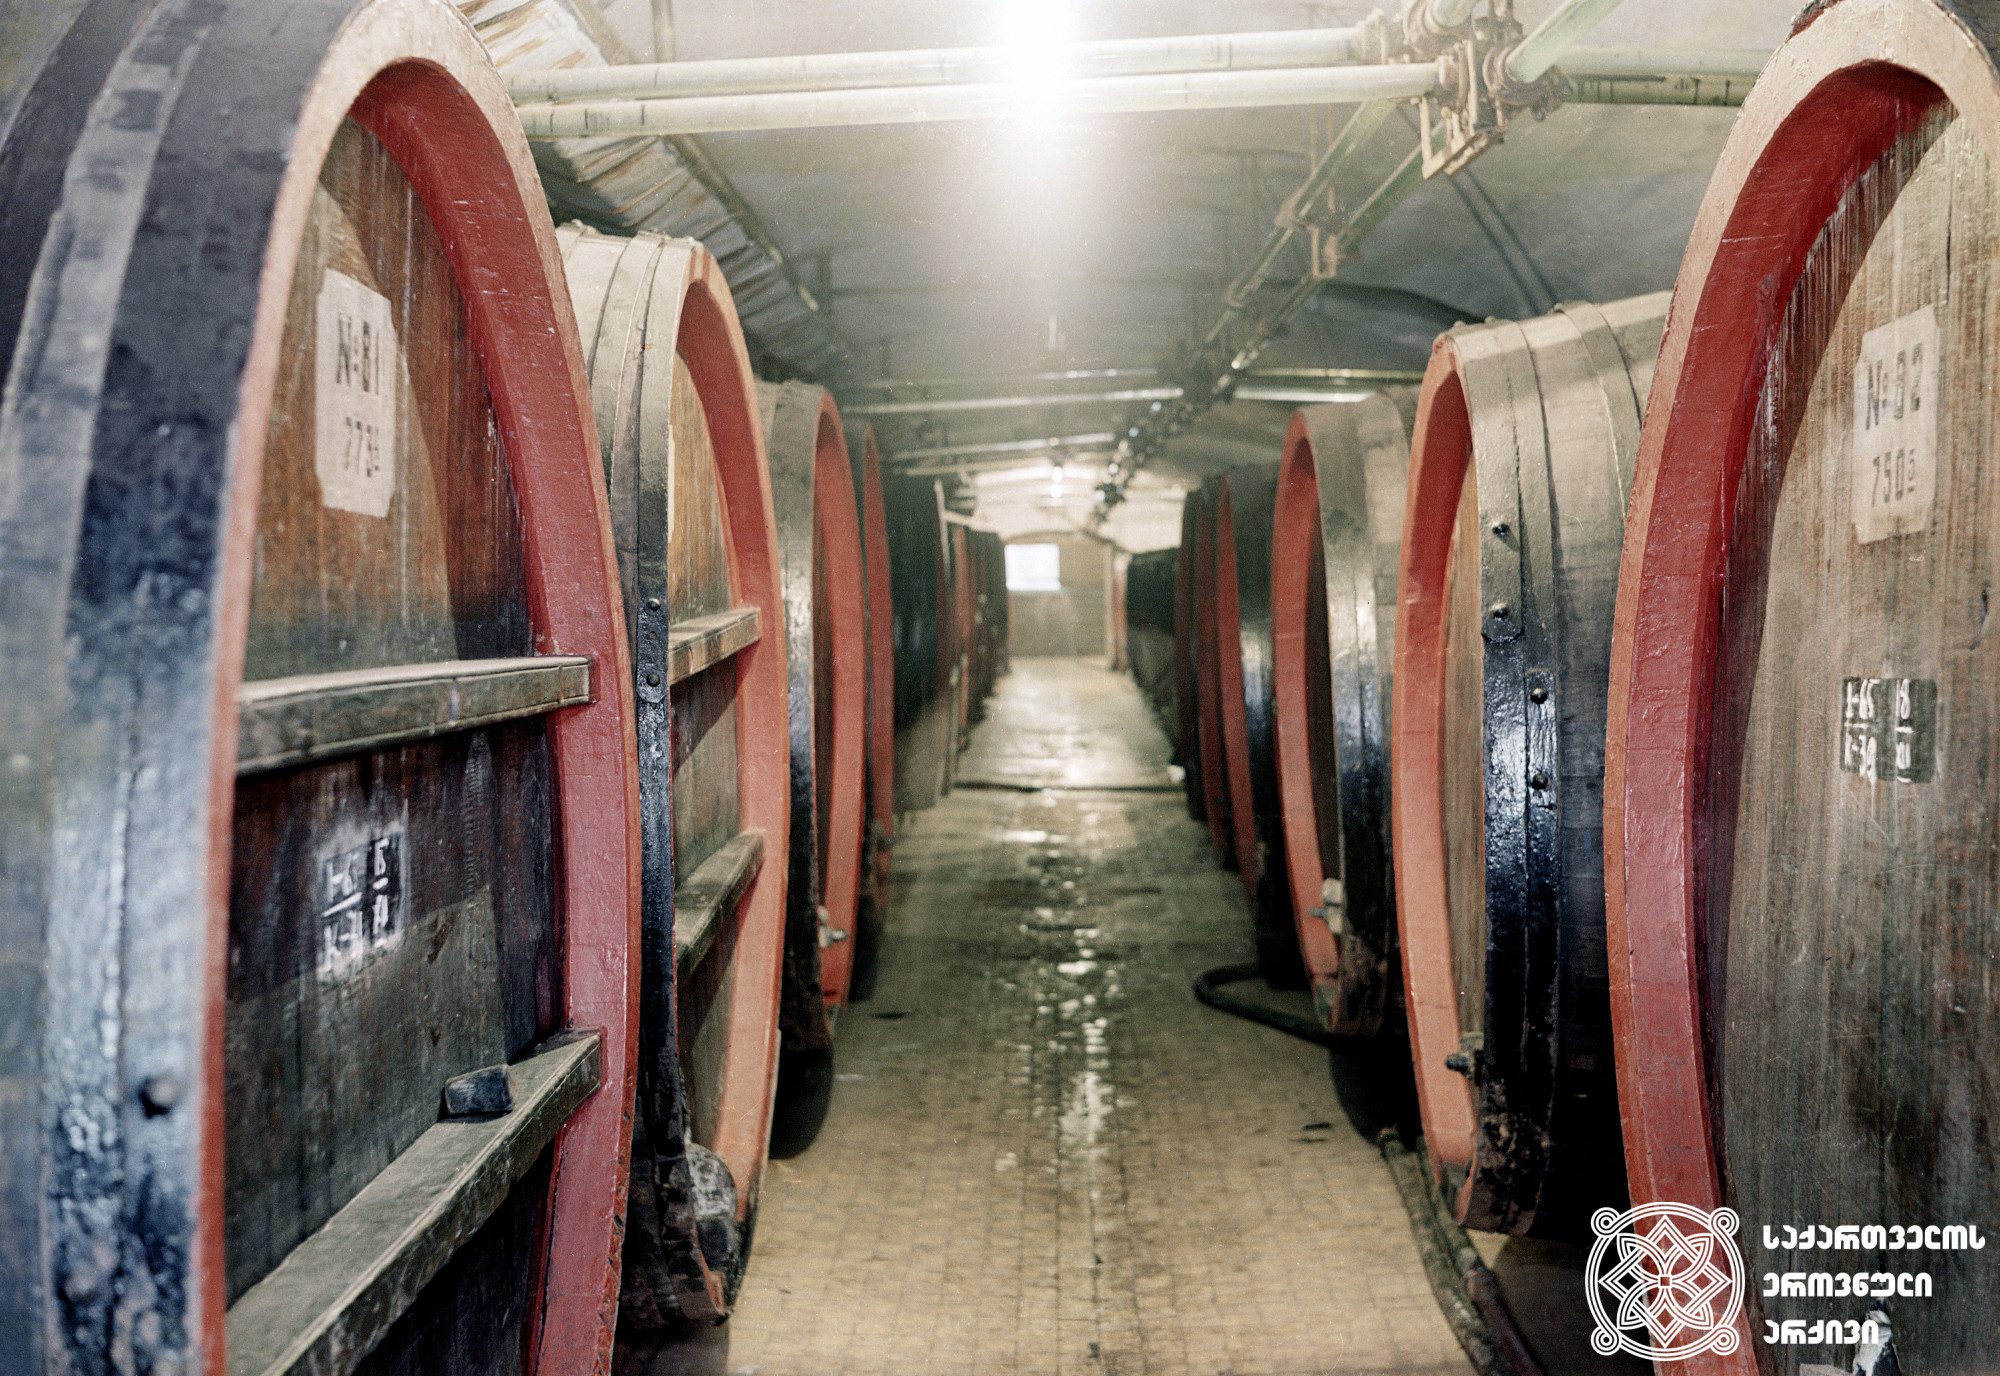 წიანანდლის მარანი<br> 
ფოტო: სერგეი ბლოხინი
1968 წელი <br> 
Tsinandali wine celler<br>
Photo by Sergei Blokhin
1968 <br>